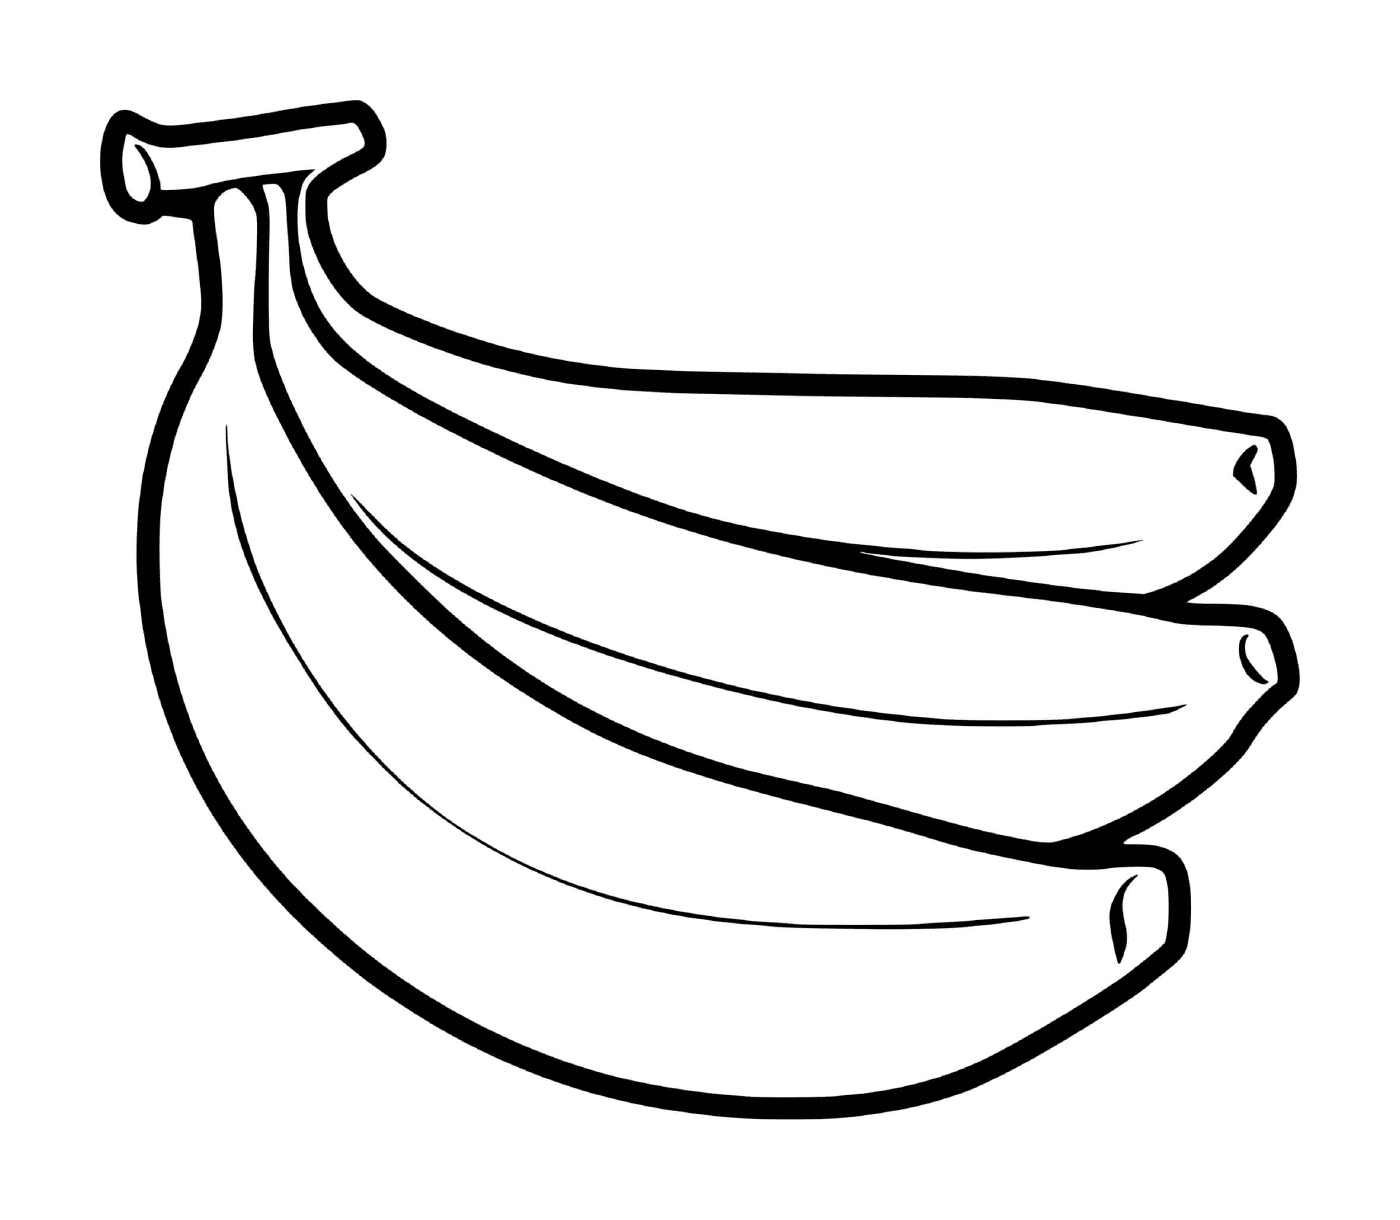   Une grappe de bananes posée par terre 